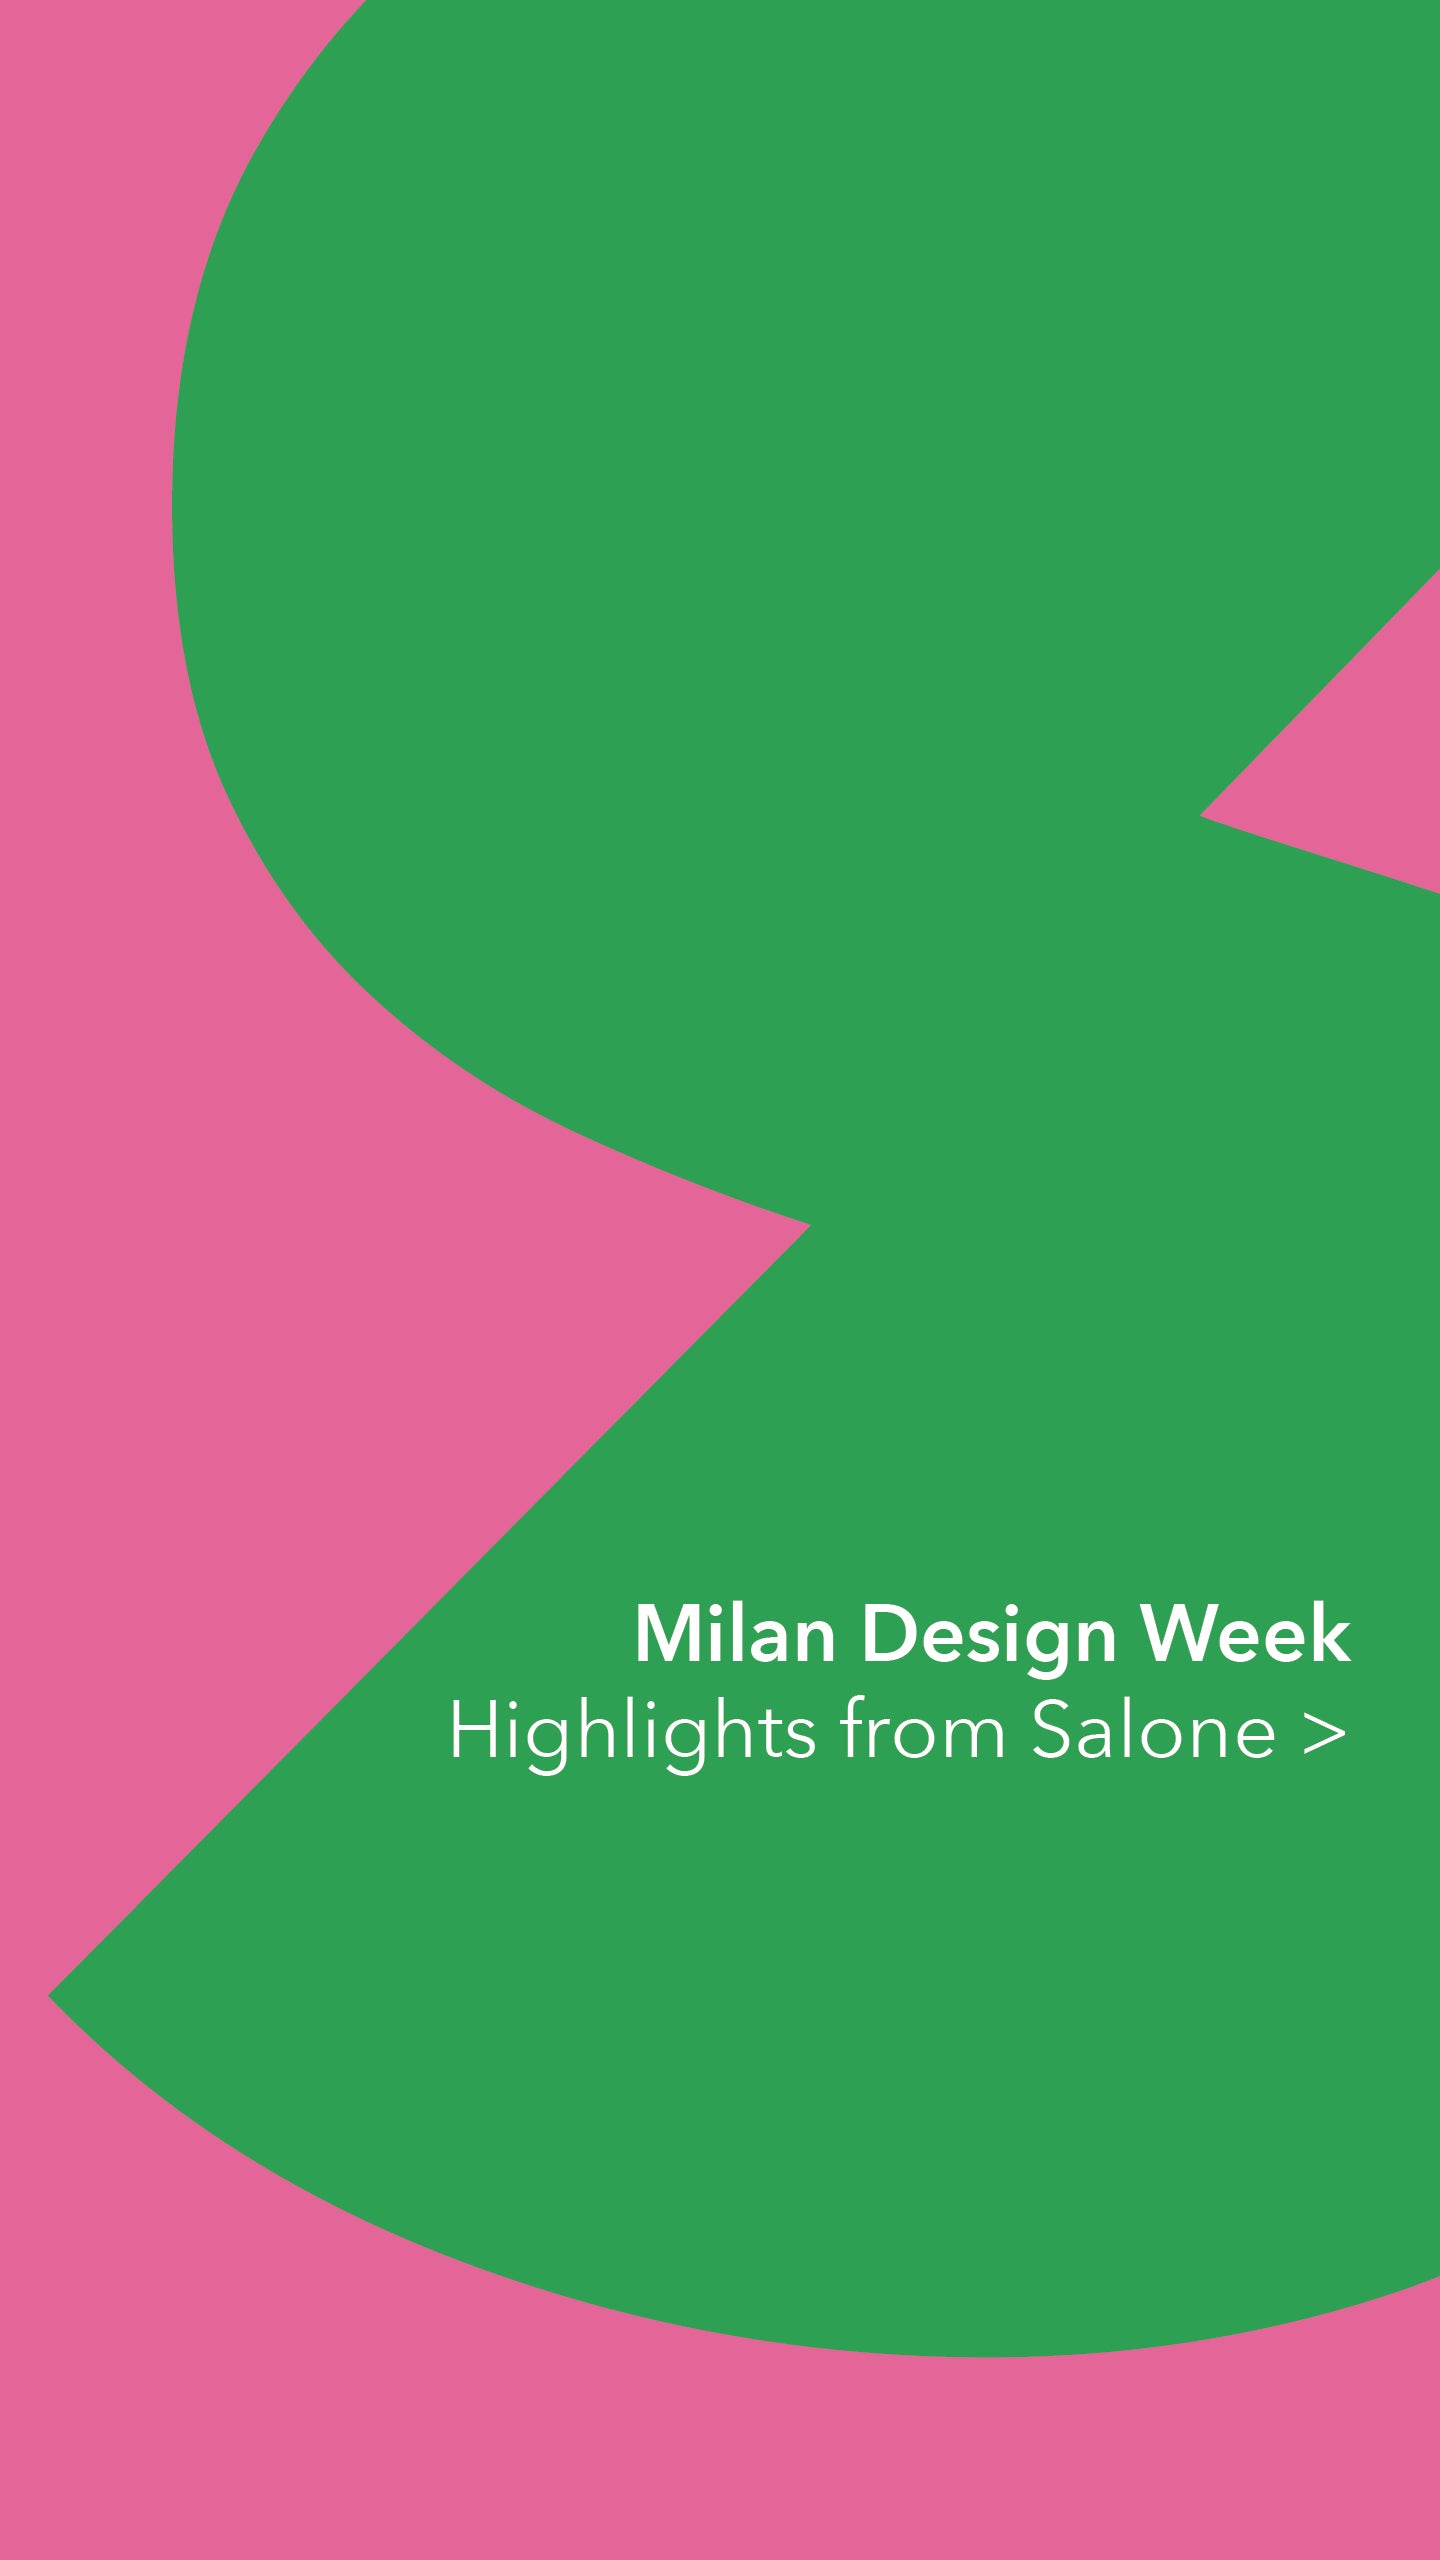 Milan Design Week 2022 Trend Report